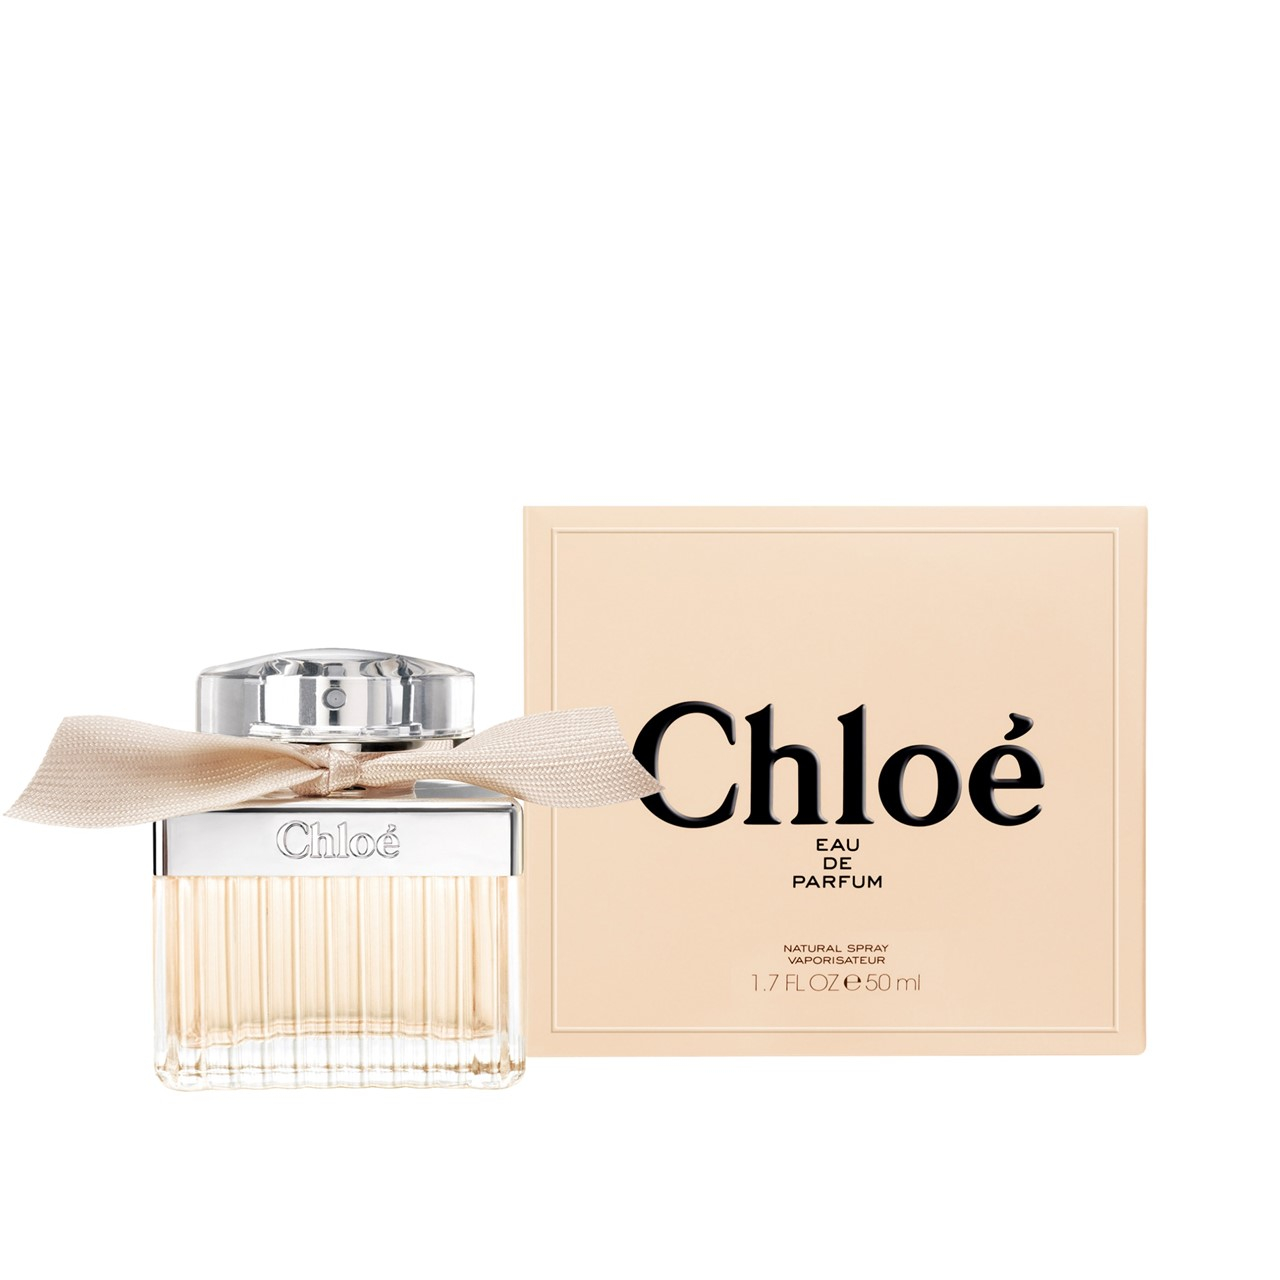 Chloé Eau de Parfum For Women 50ml (1.7fl oz)